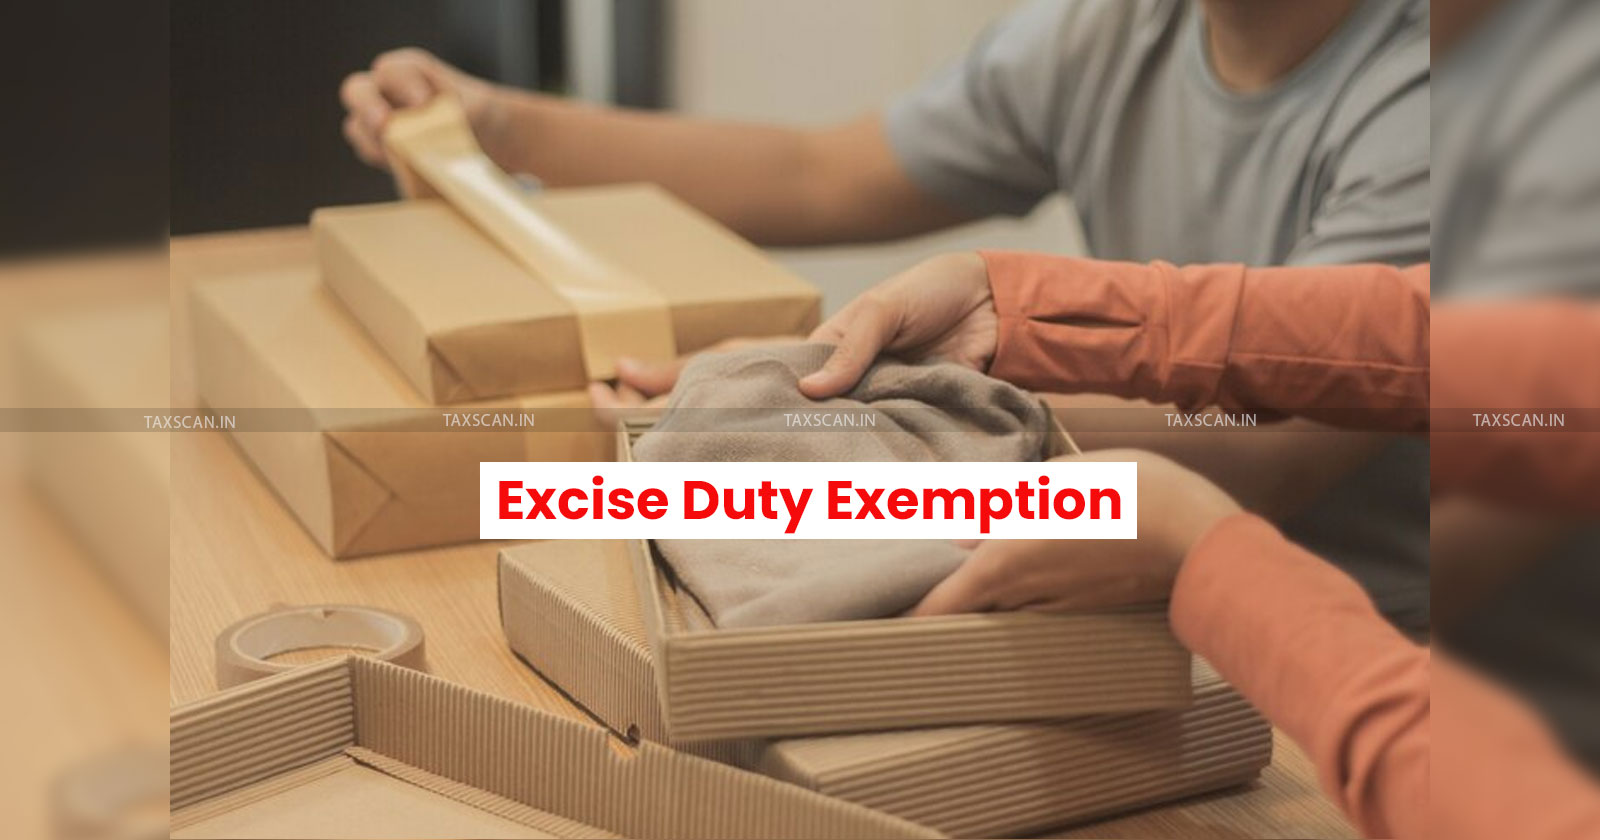 Excise duty exemption - Packing materials procurement - CESTAT Bangalore - Domestic market - Exemption notification - taxscan